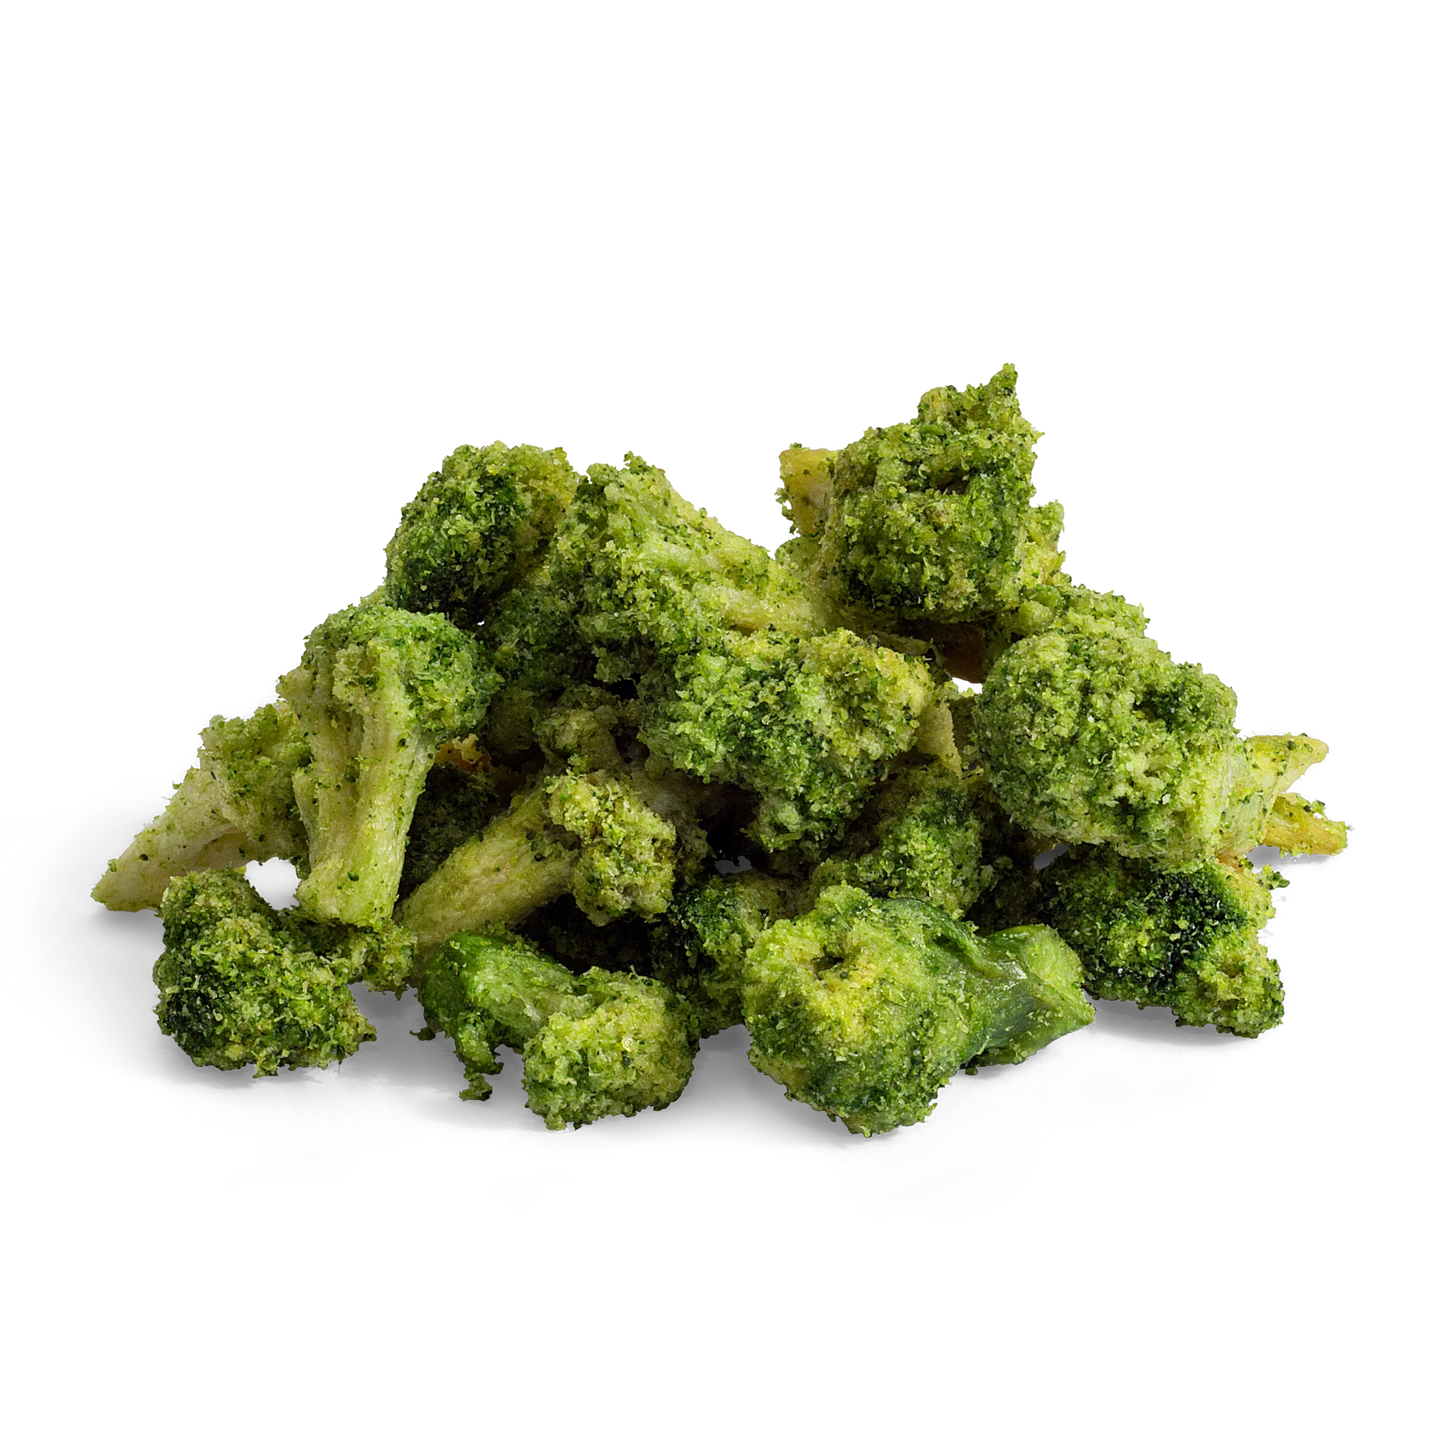 DJ&A Crispy Broccoli Florets 25g, Original